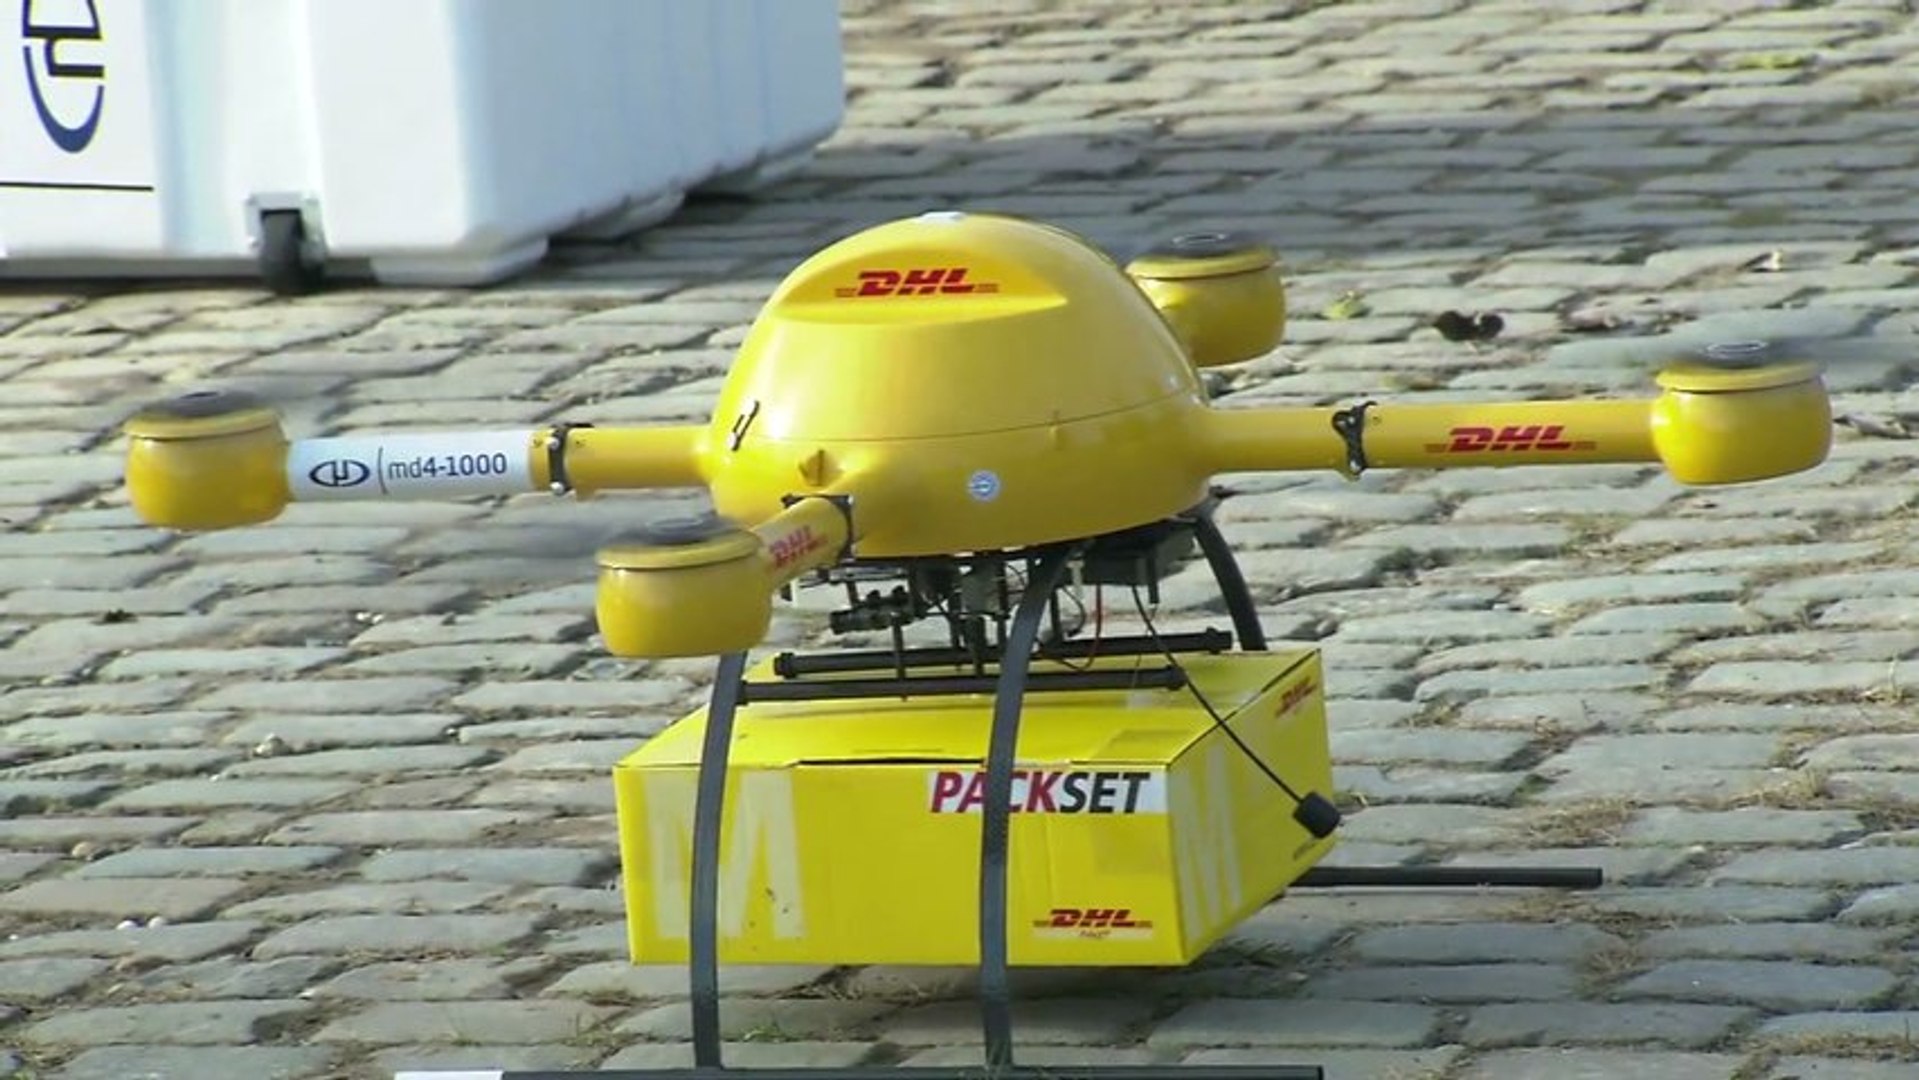 Livraison par drone chez DHL - Vidéo Dailymotion